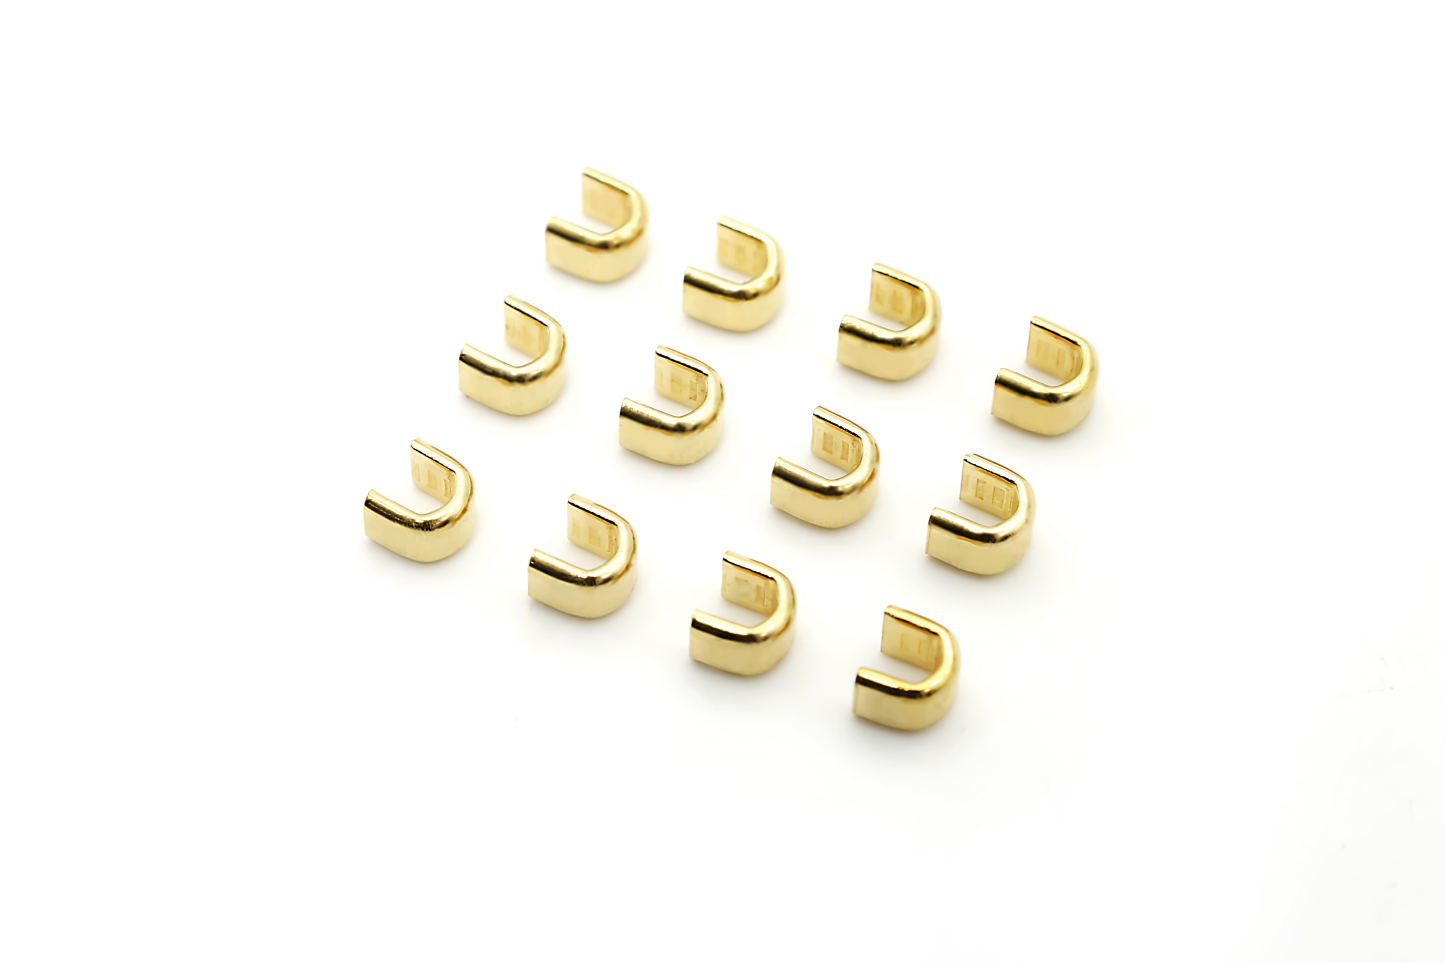 Fholesale Zipper Accessories Brass Metal Zipper Stop of U Shape Stopper-QLQ Zipper